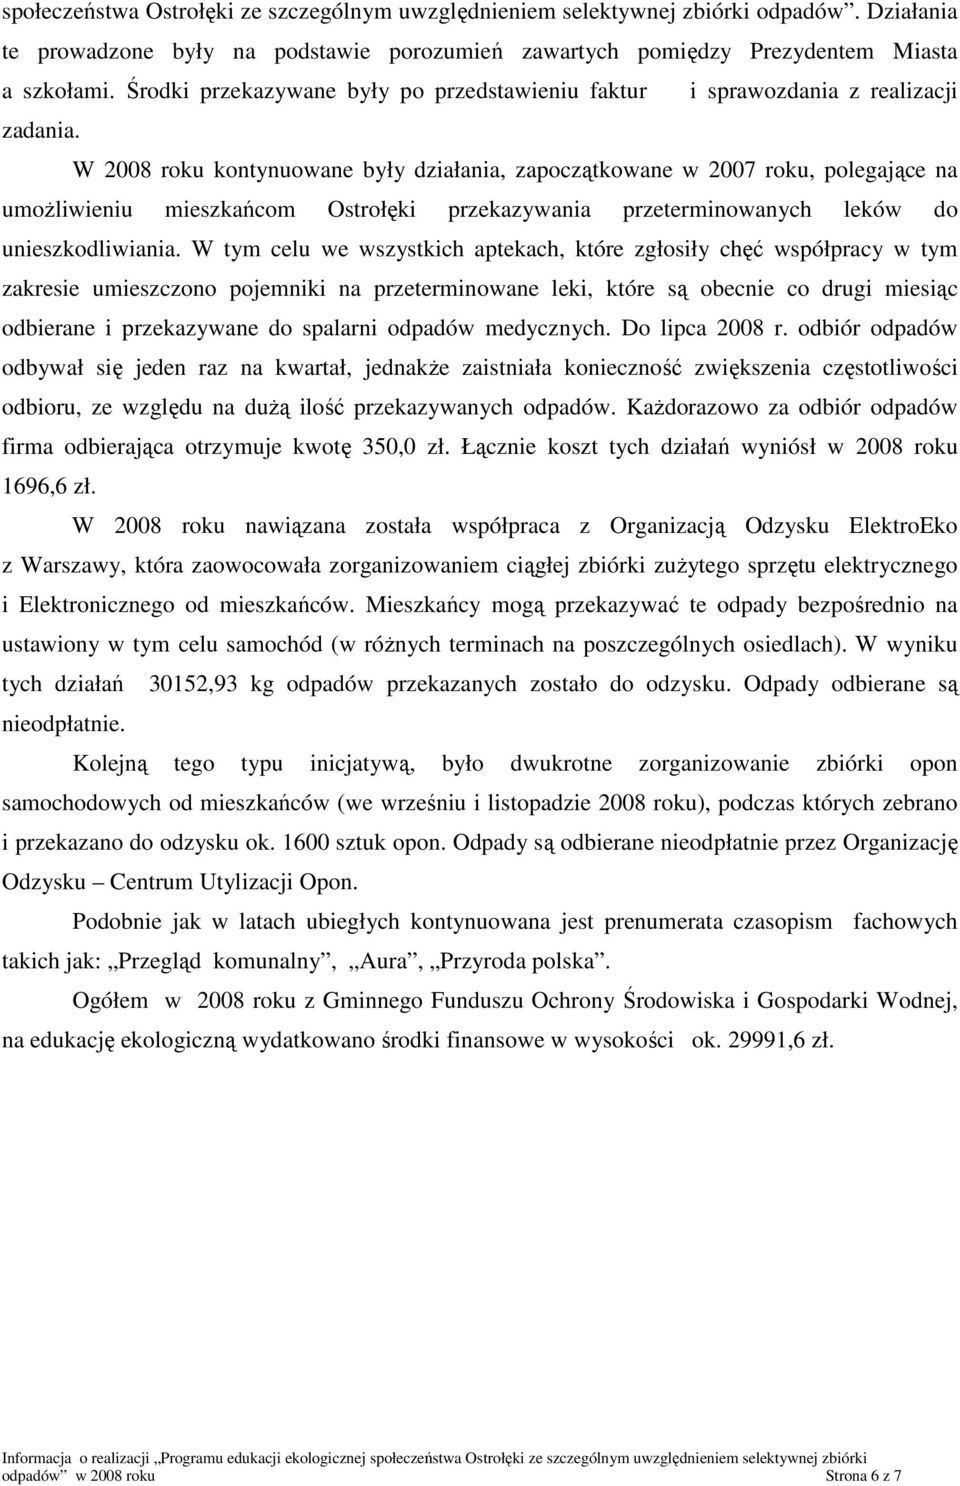 W 2008 roku kontynuowane były działania, zapoczątkowane w 2007 roku, polegające na umoŝliwieniu mieszkańcom Ostrołęki przekazywania przeterminowanych leków do unieszkodliwiania.